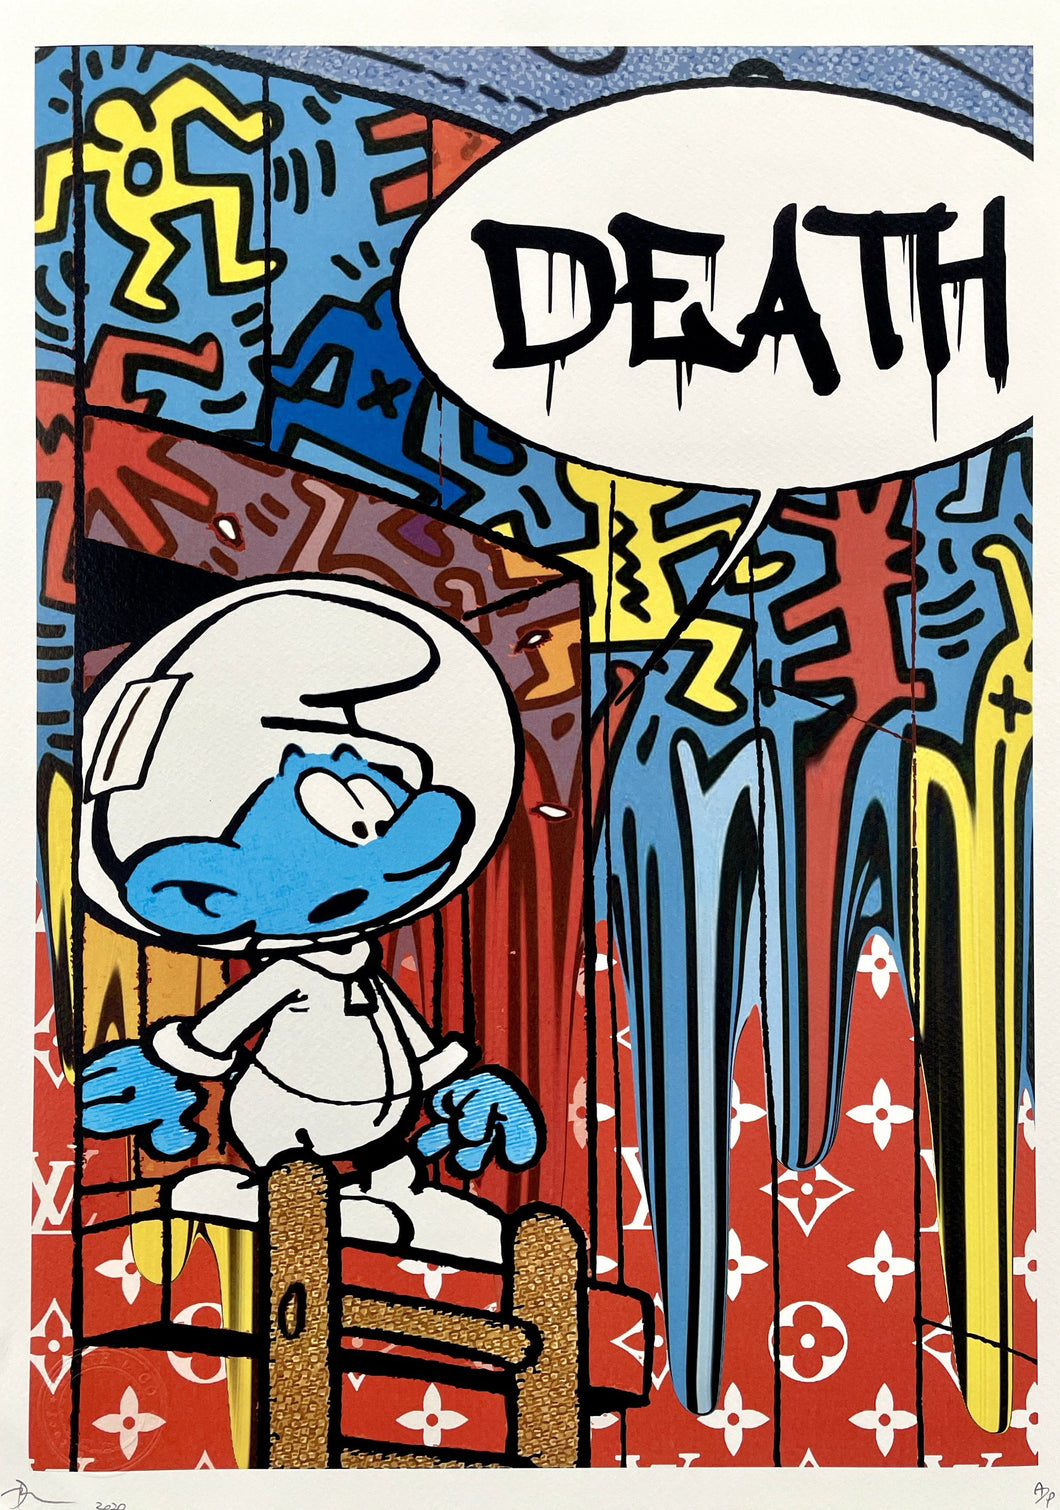 Smurf Death Print Death NYC